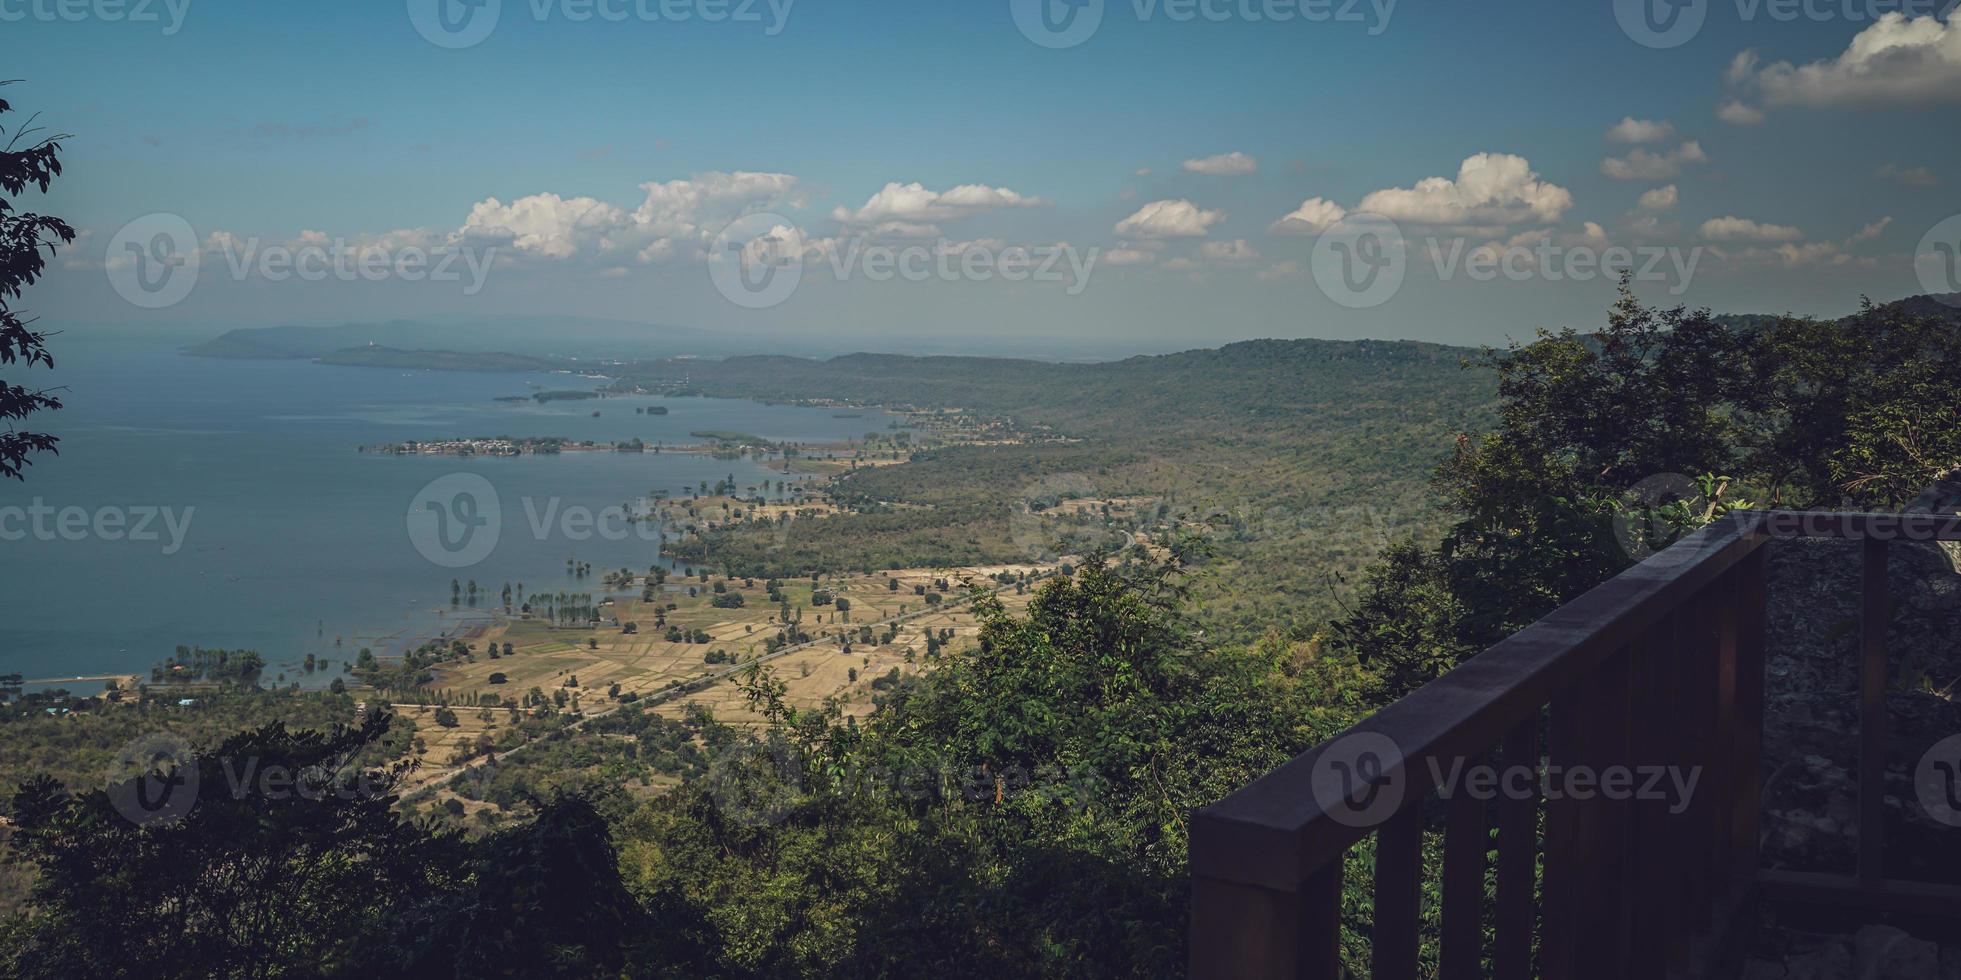 hin chang si punto de vista que puede ver el paisaje de la represa ubolratana debajo del cielo, montañas y lagos. foto